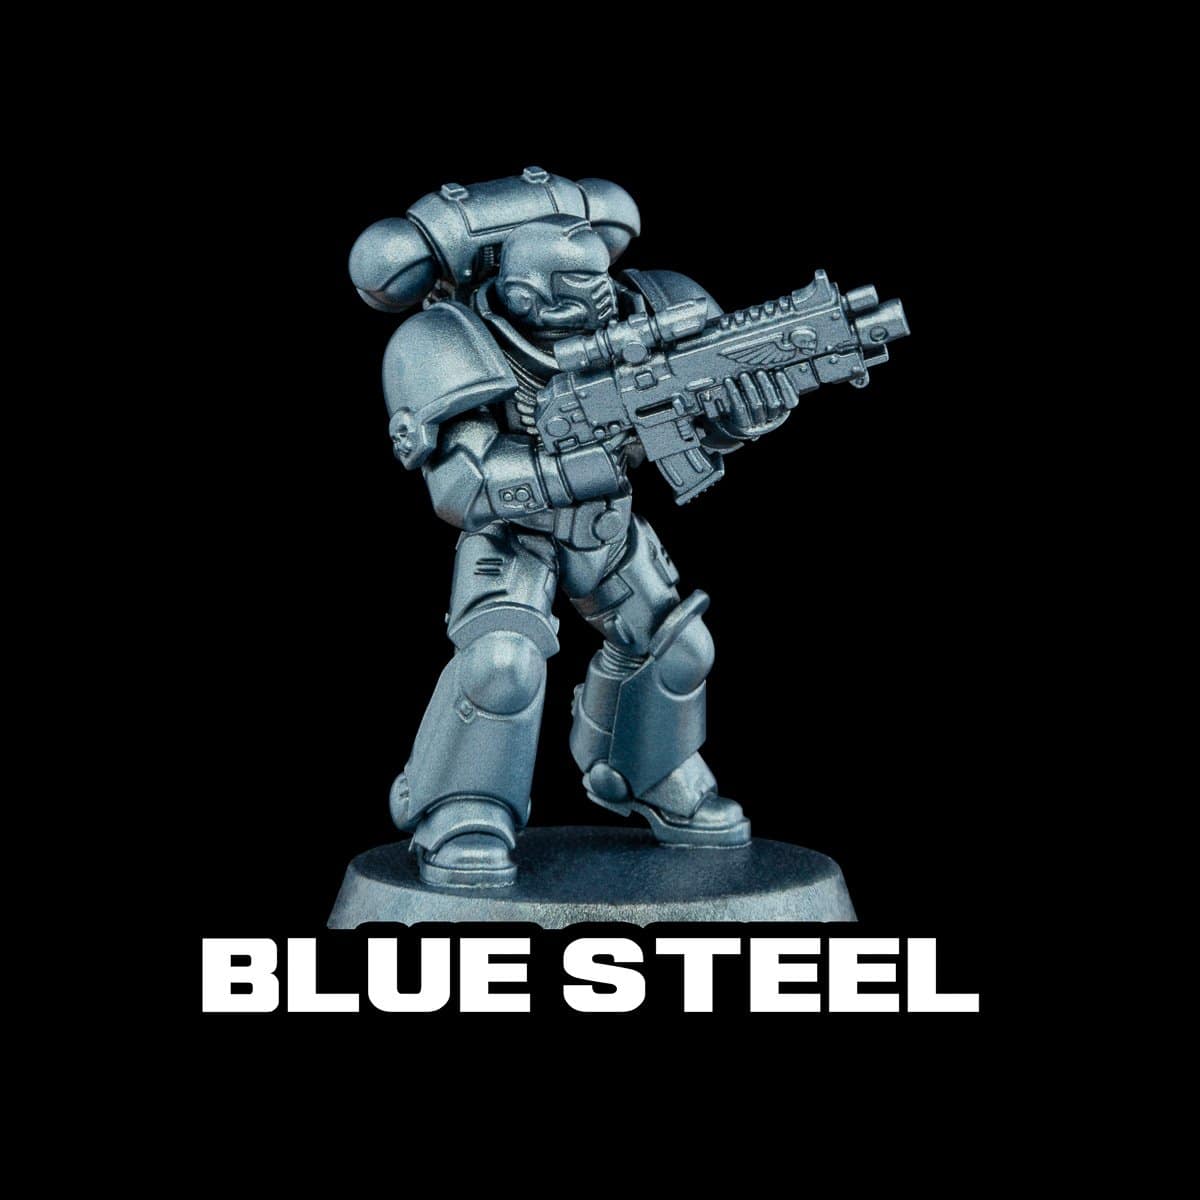 Blue Steel Metallic Acrylic Paint Metallic Turbo Dork Exit 23 Games Blue Steel Metallic Acrylic Paint